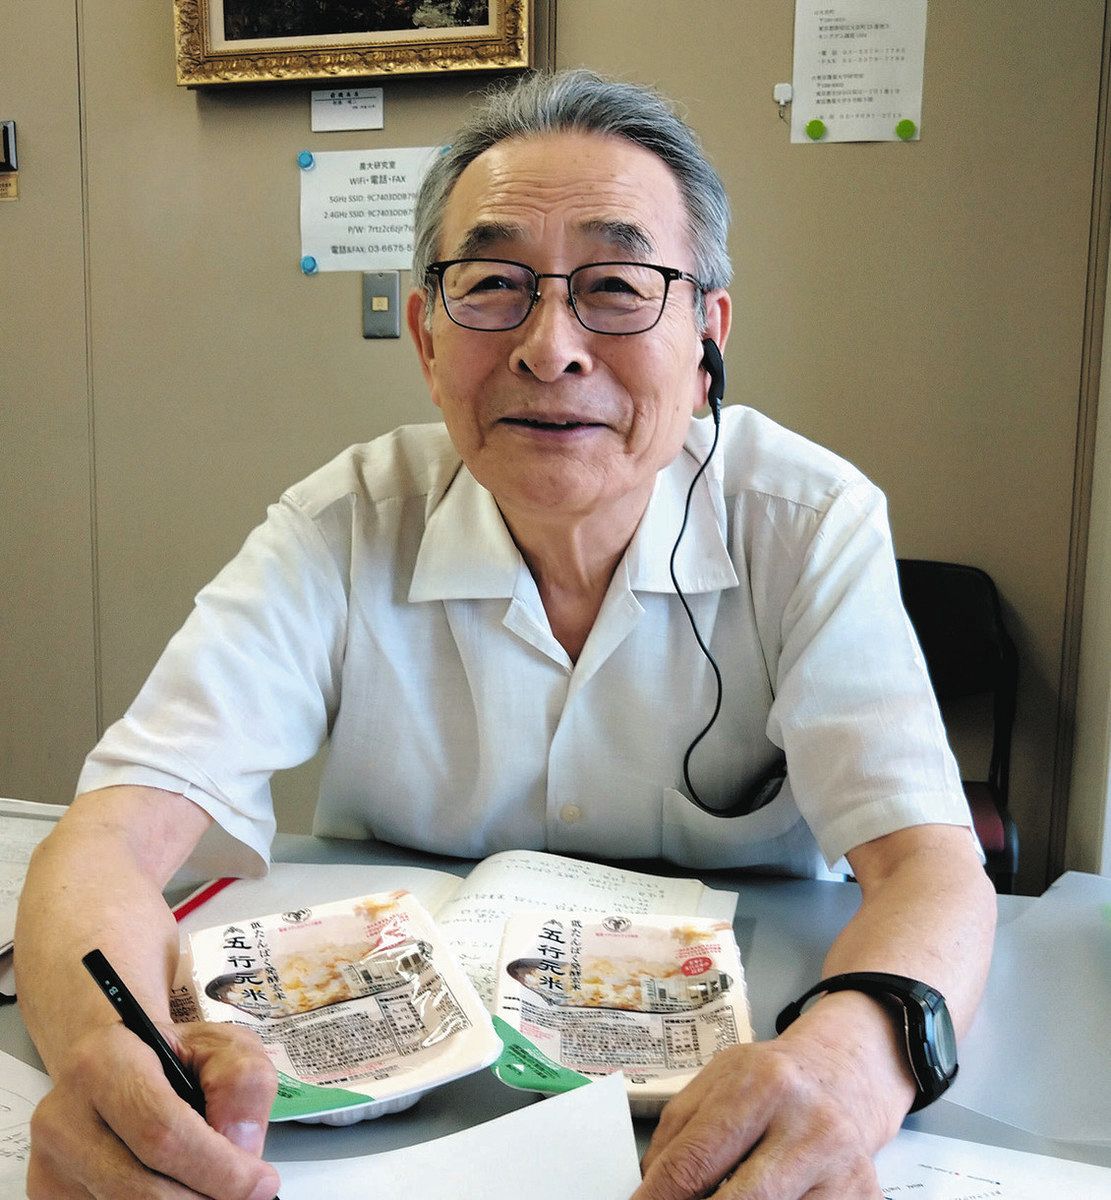 がん研究の渡邊昌さん 薬に頼らず「未病」を治す 糖尿病を食事と運動で克服 健康玄米の開発に熱：東京新聞 TOKYO Web